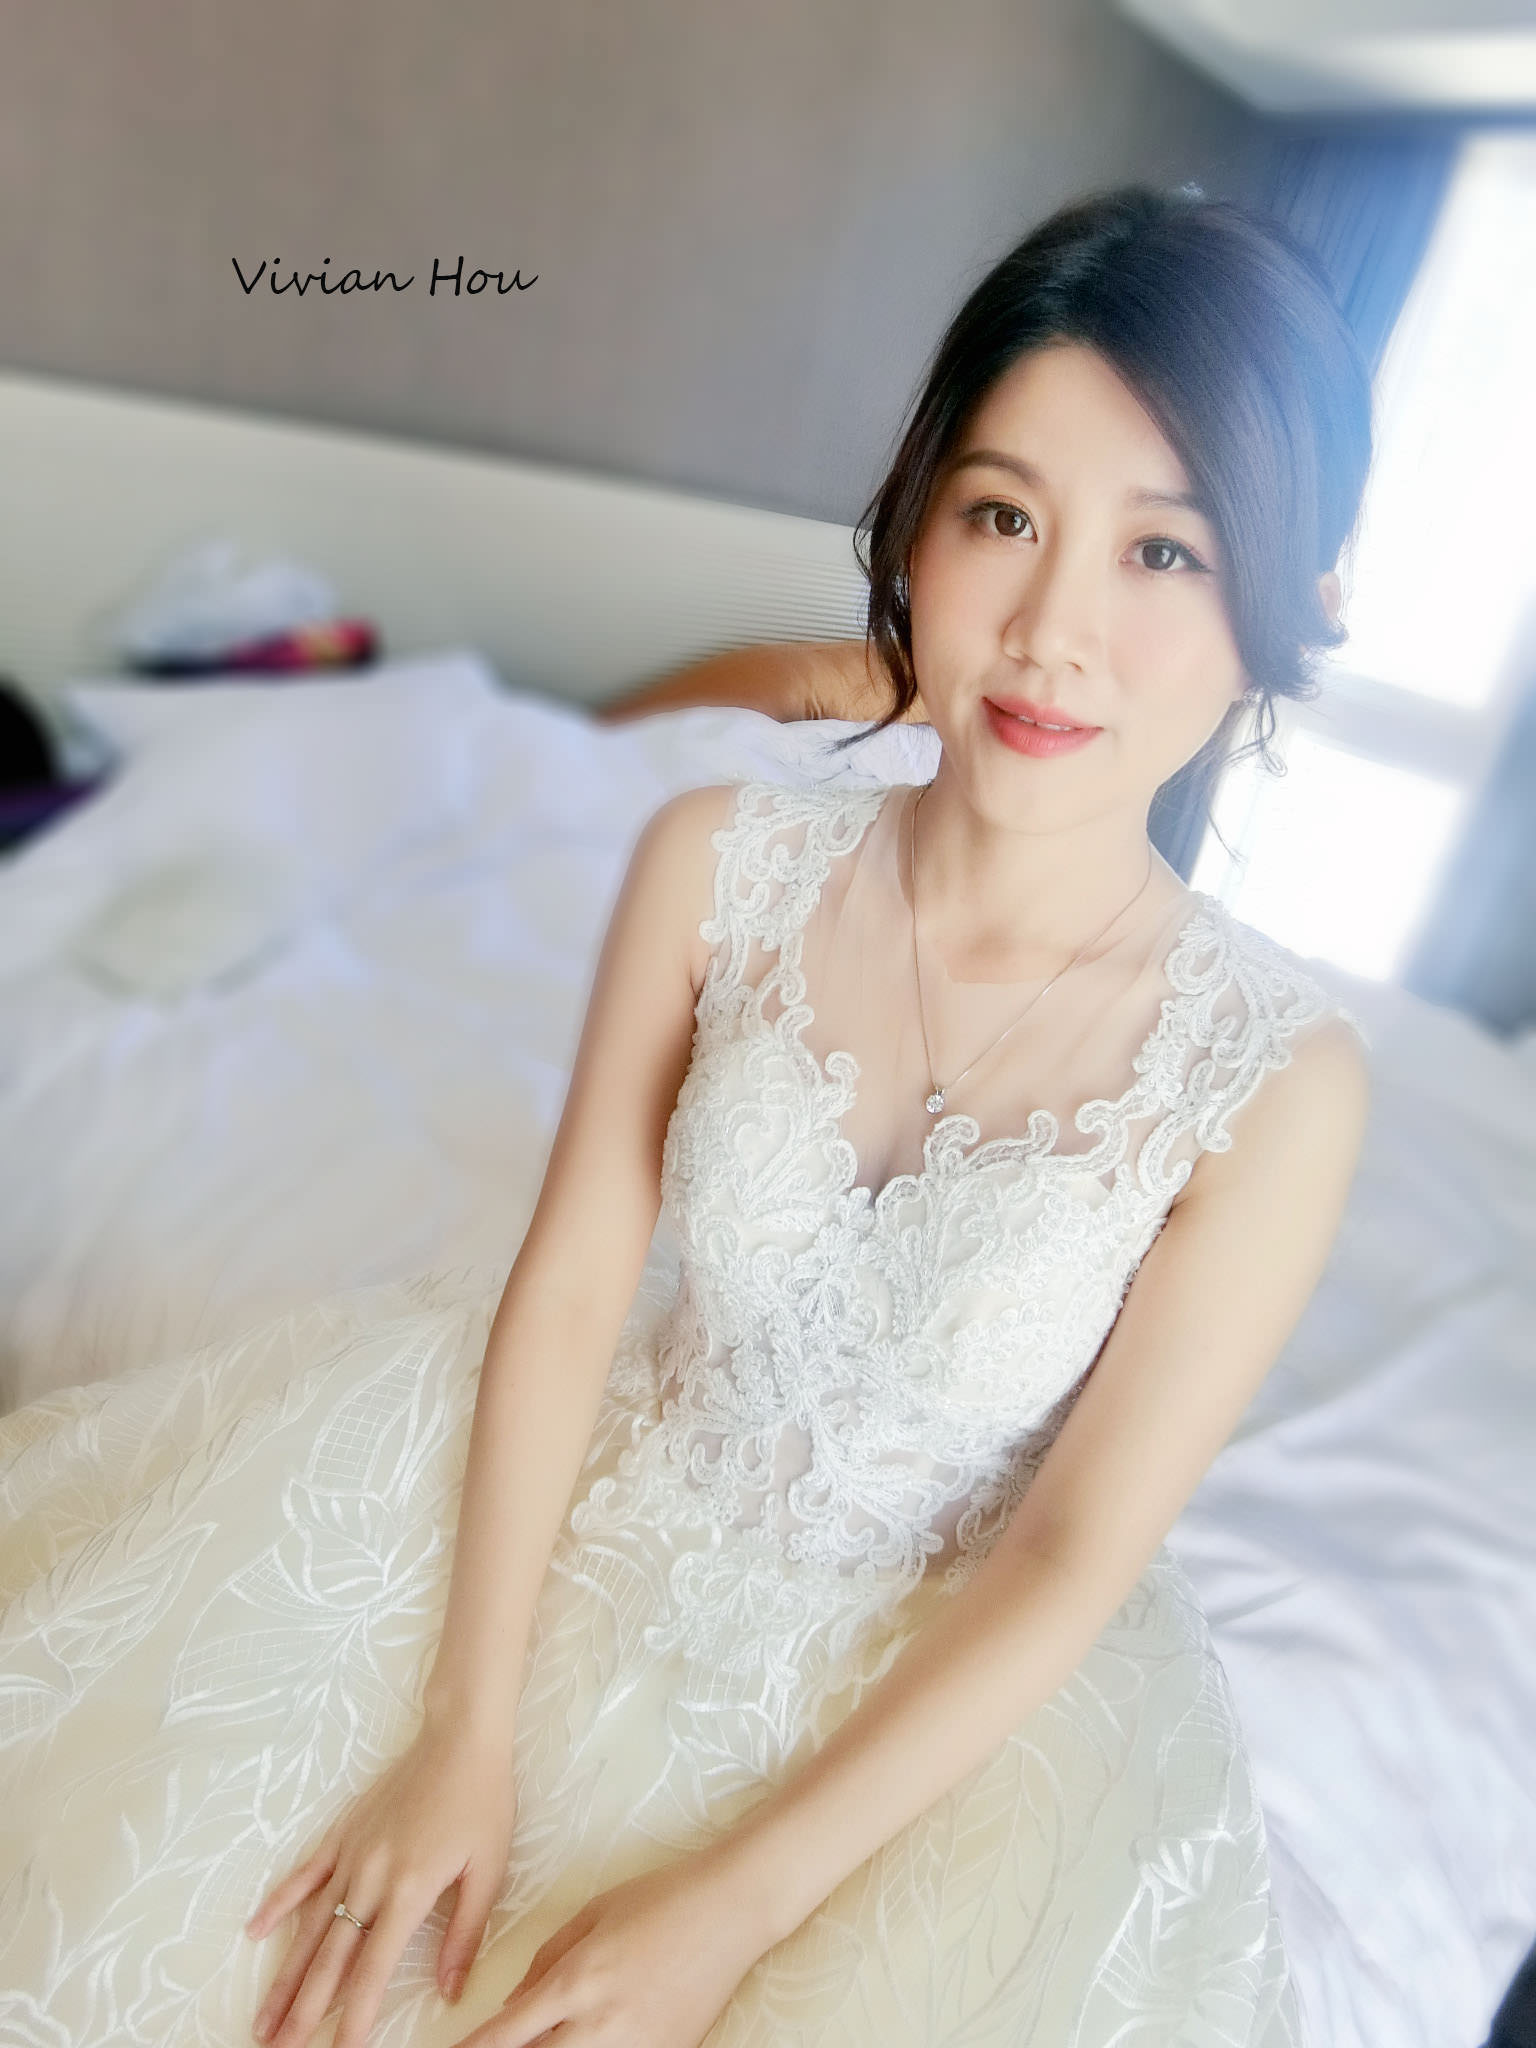 典雅、女人味、氣質的白紗婚宴造型 台北新秘